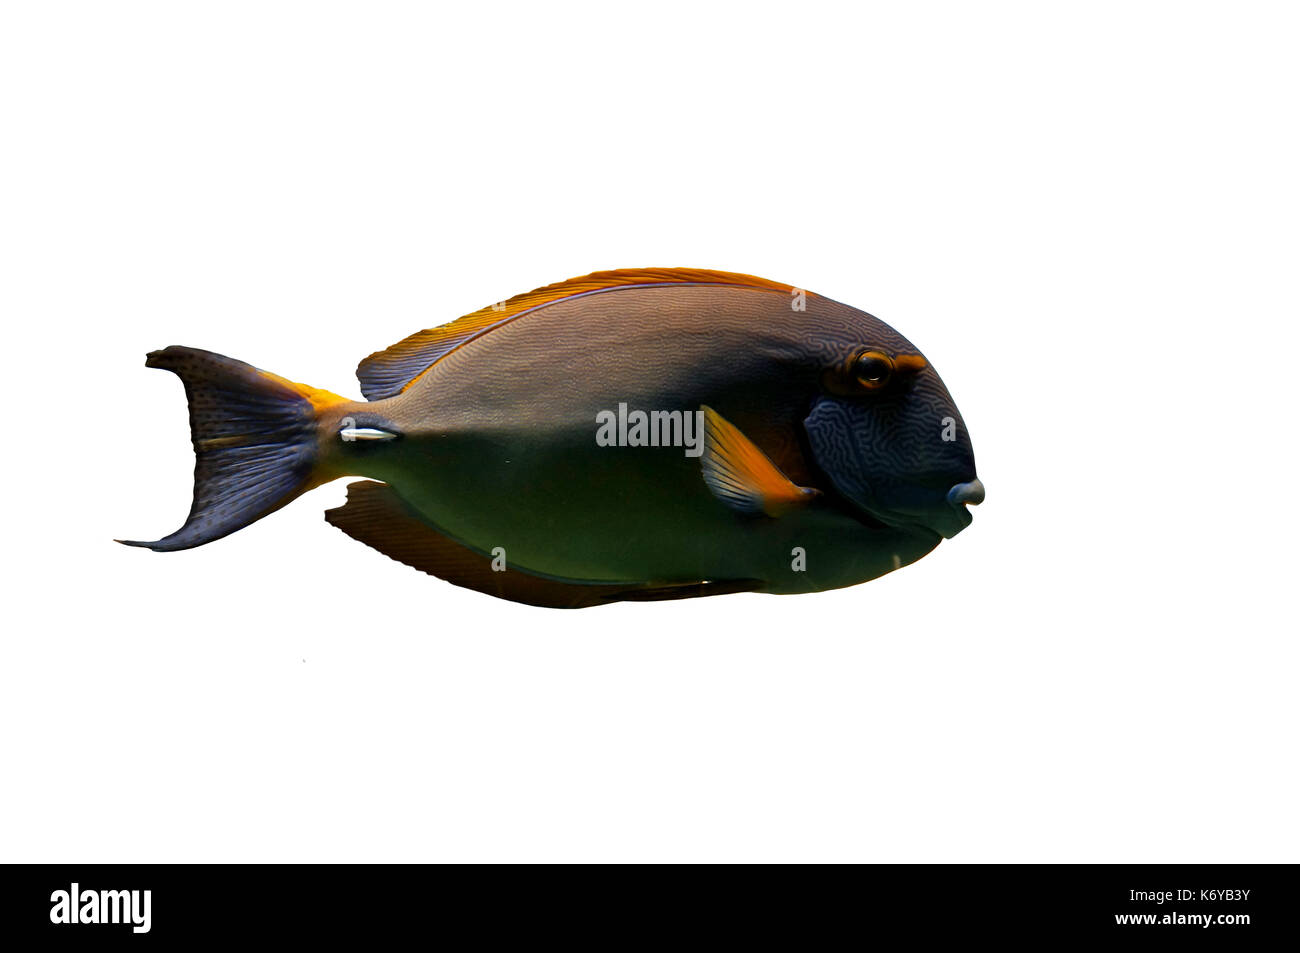 Pesce tropicale : Acanthuridae, isolato su sfondo bianco Foto Stock